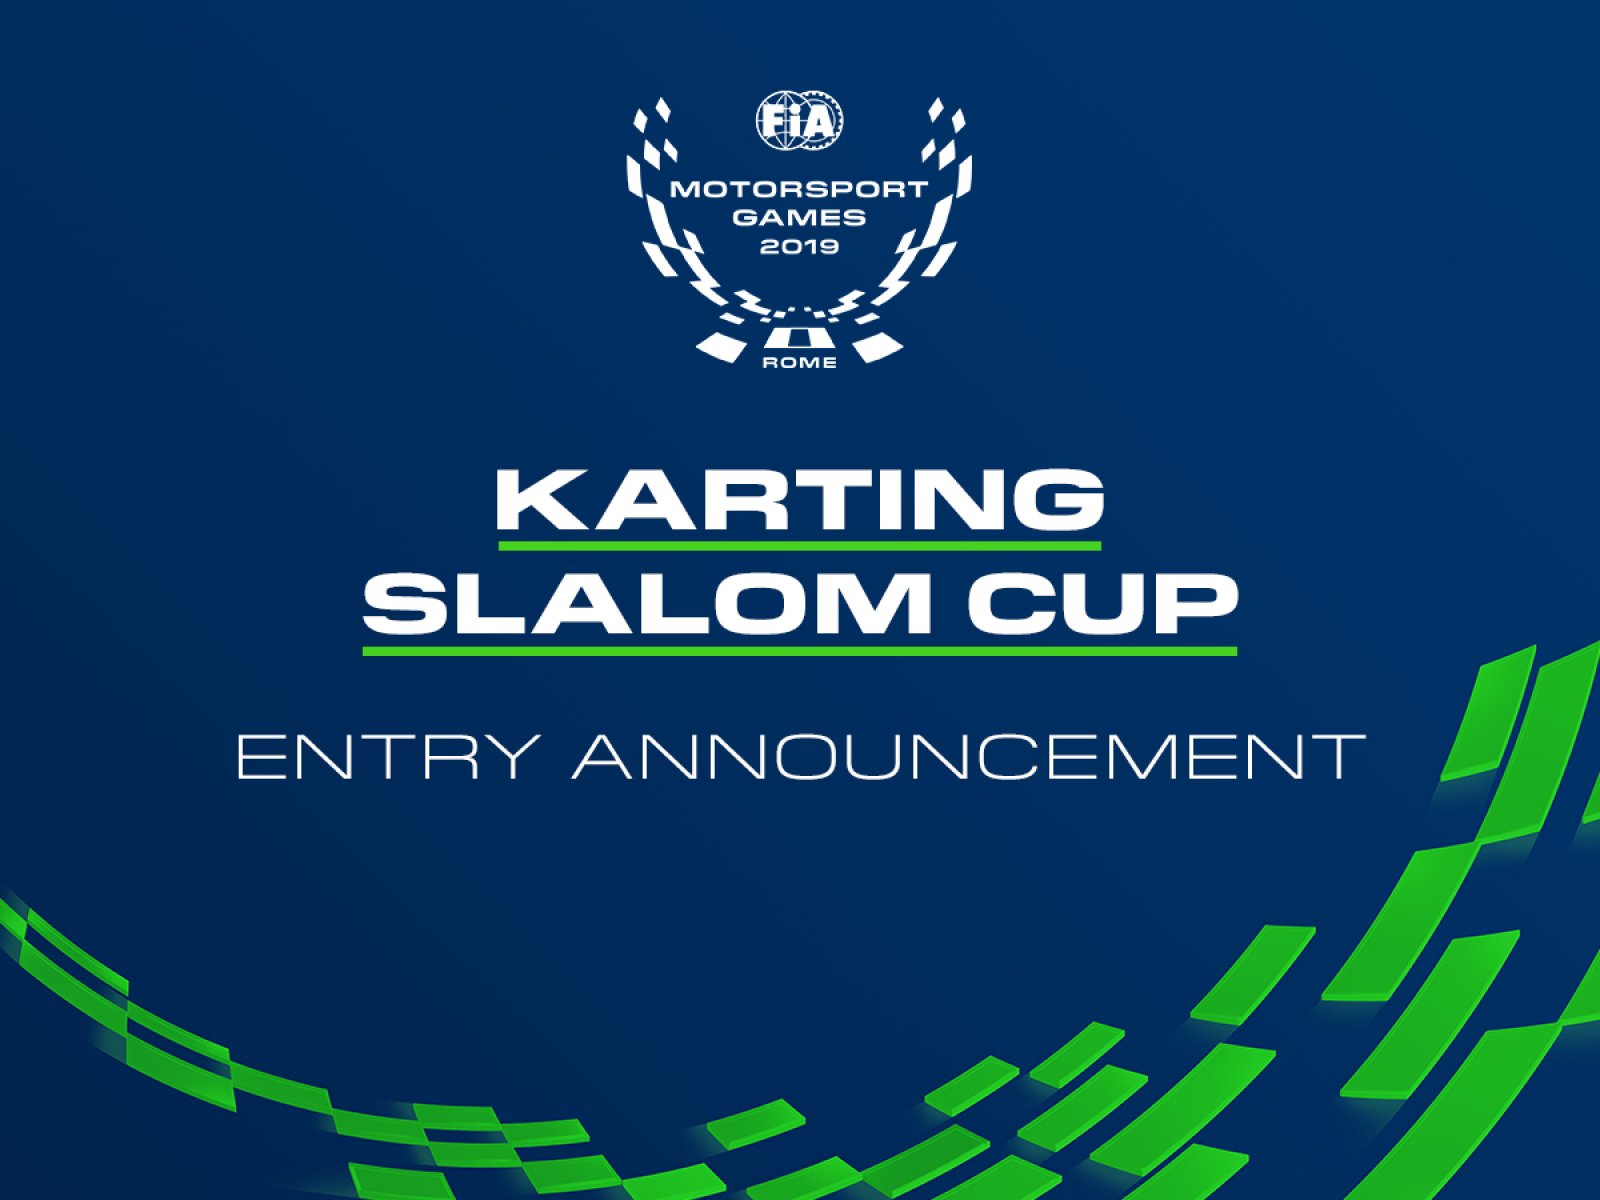 Il Karting Slalom Cup attrae un forte schieramento iniziale per i FIA Motorsport Games